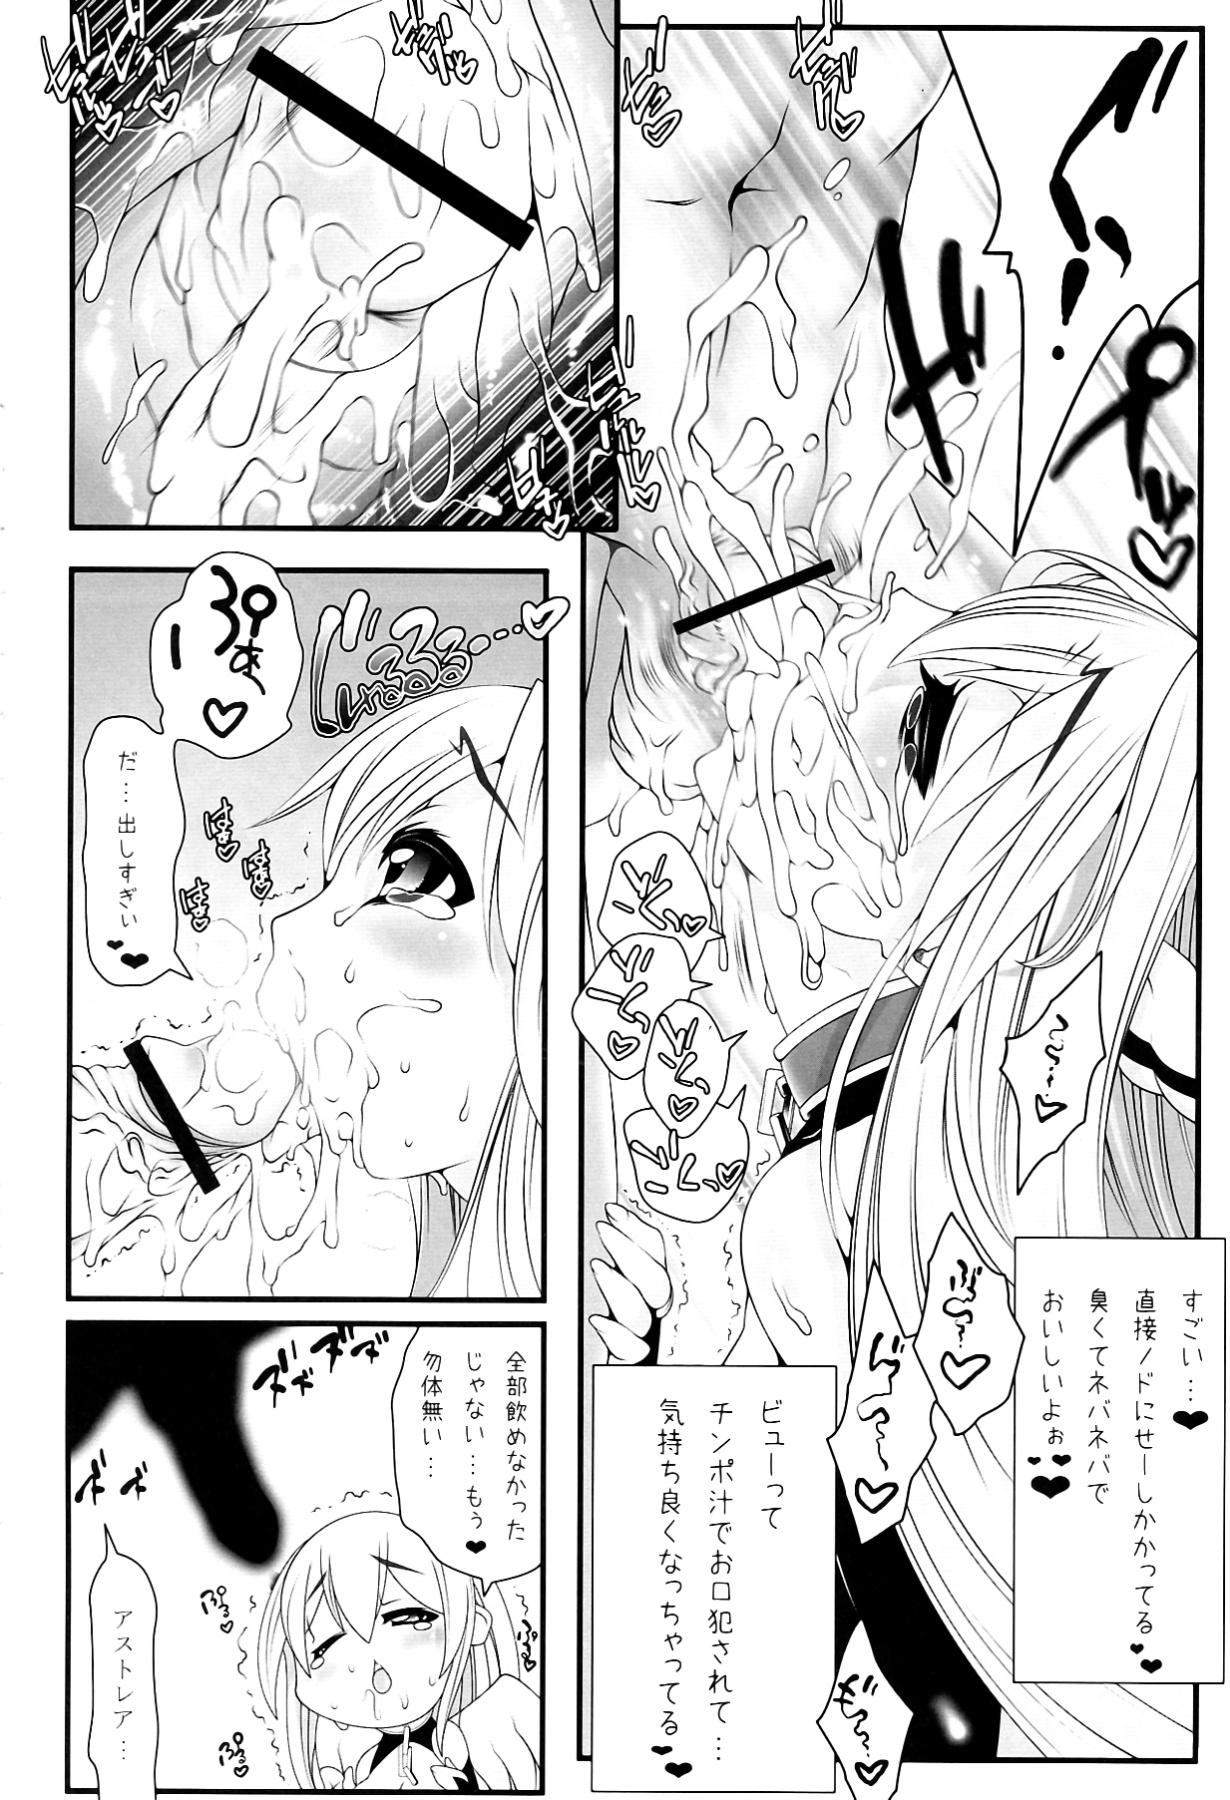 Bus Astraea-san to. - Sora no otoshimono Hot Fucking - Page 8